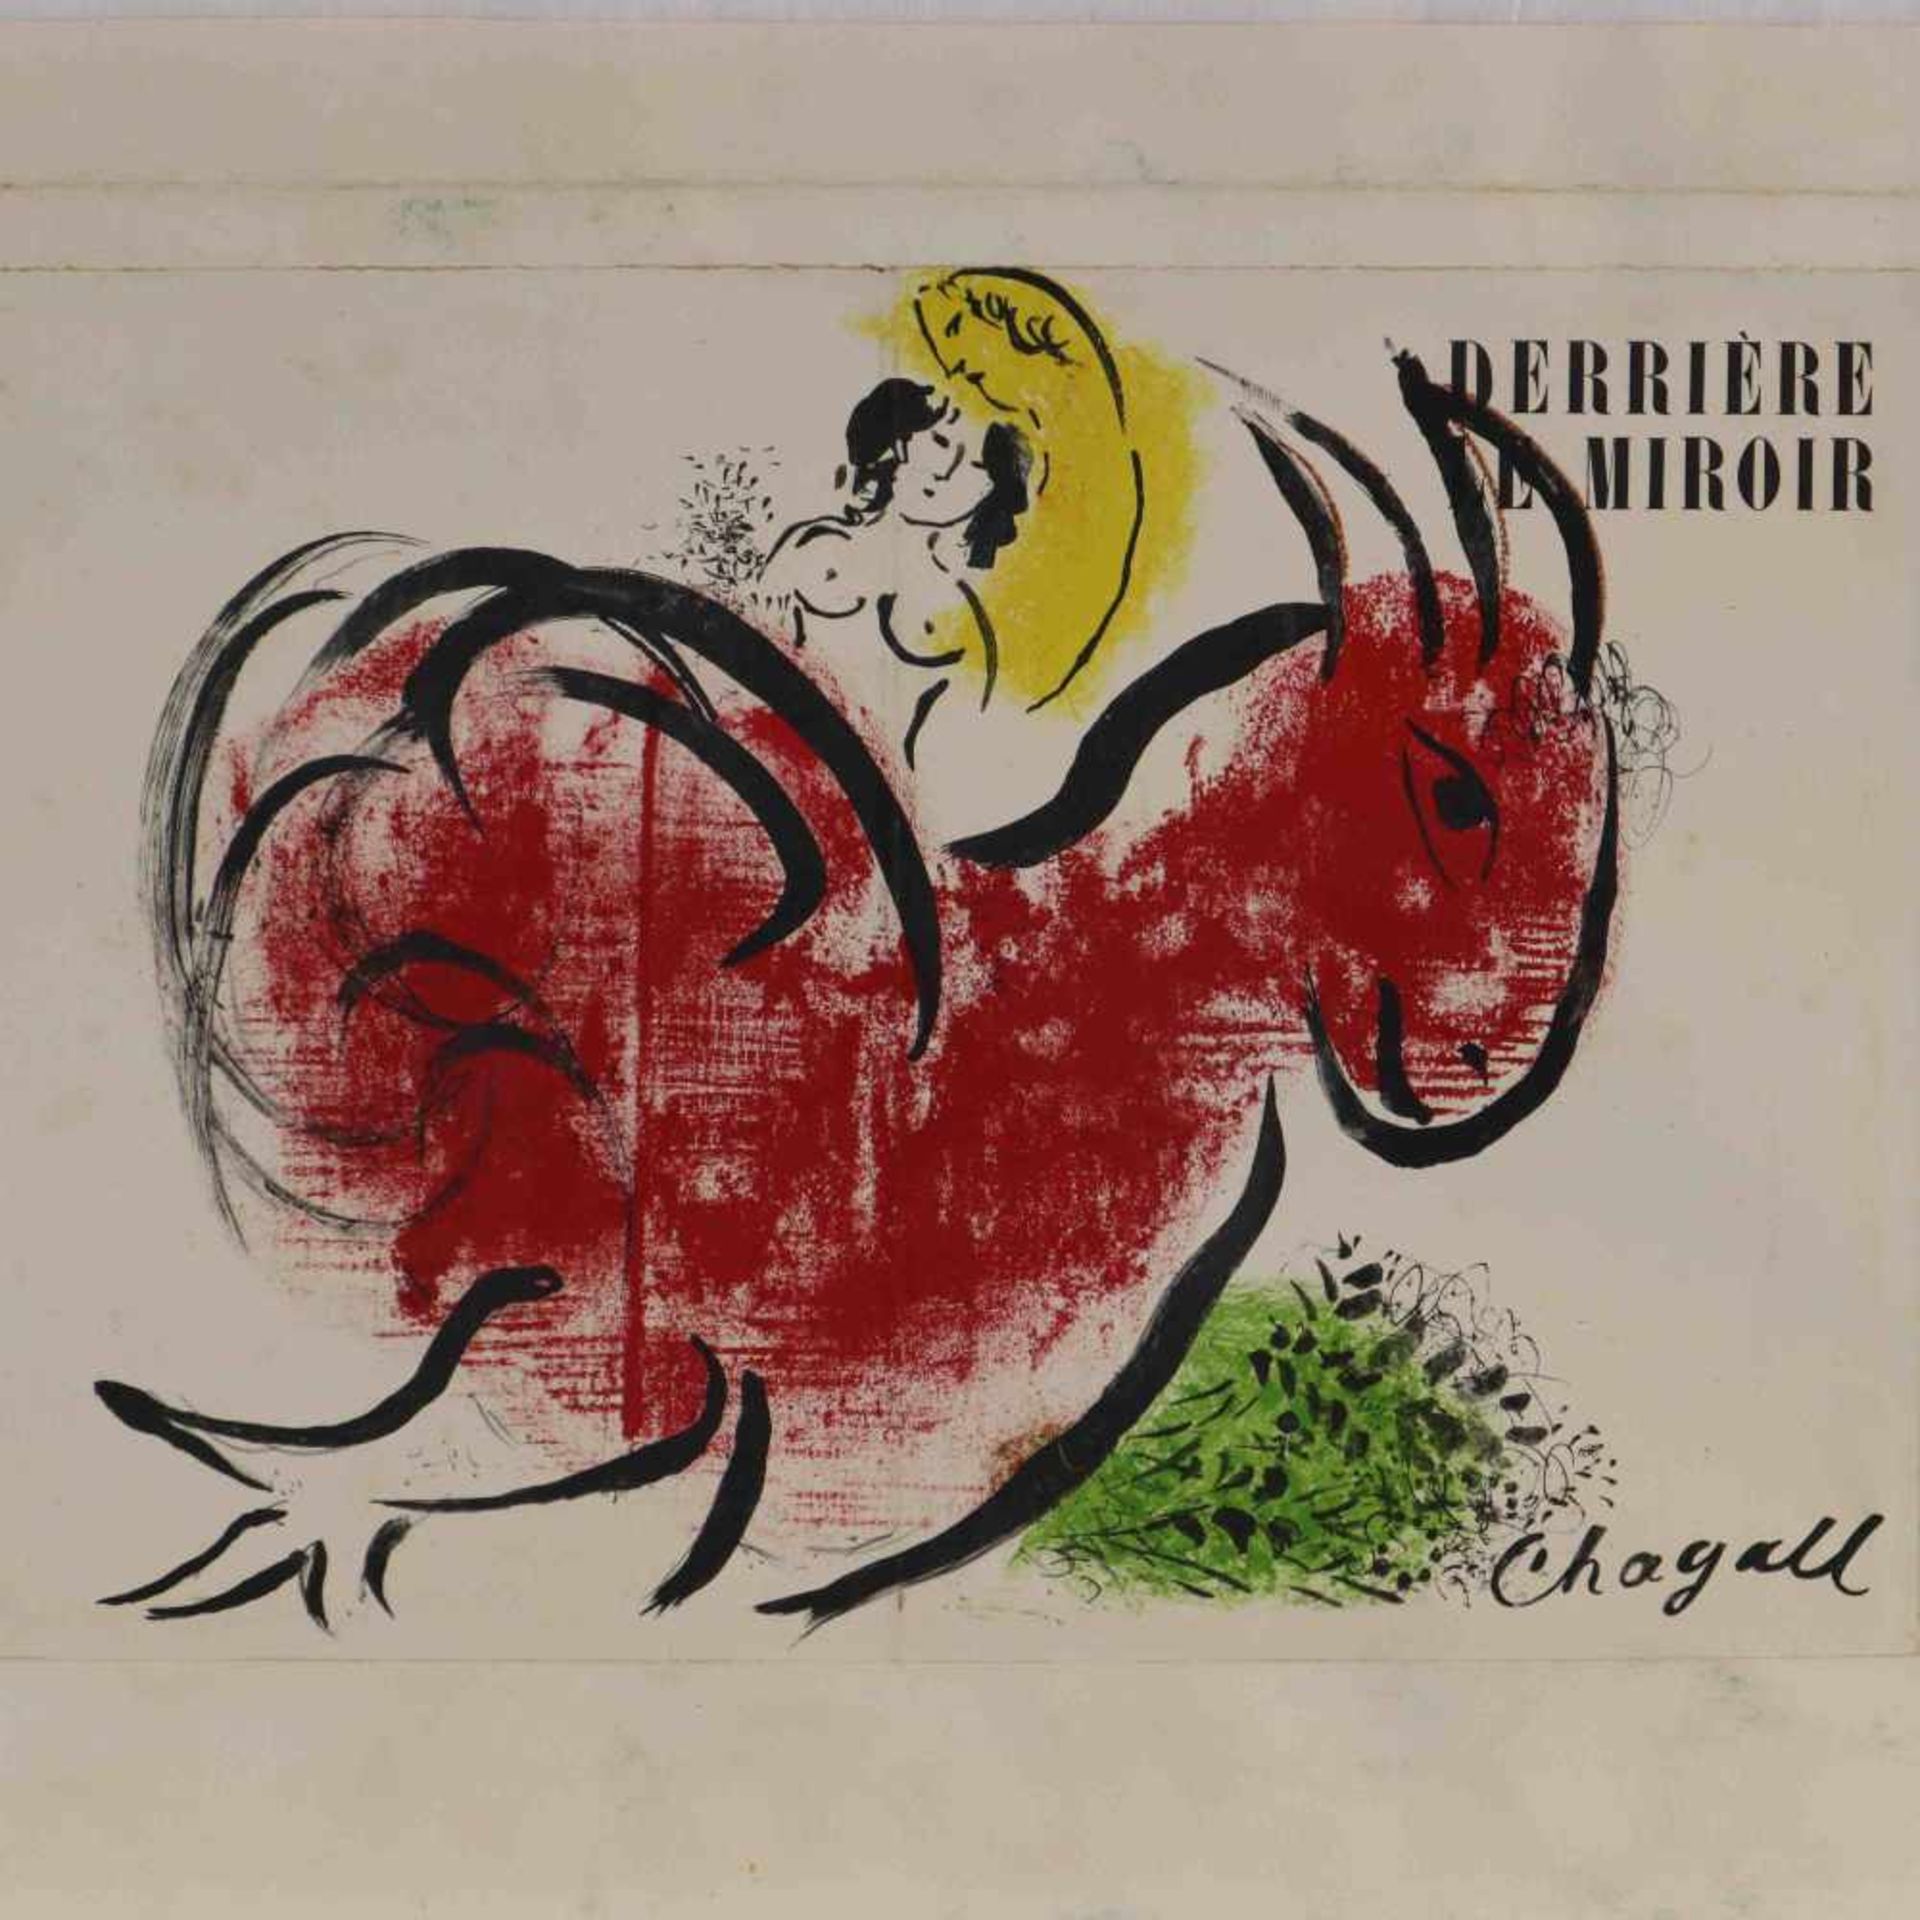 Chagall, Marc (1887 Witebsk - 1985 Saint Paul de Vence) - "Derriere le miroir", Nr. 44-45,